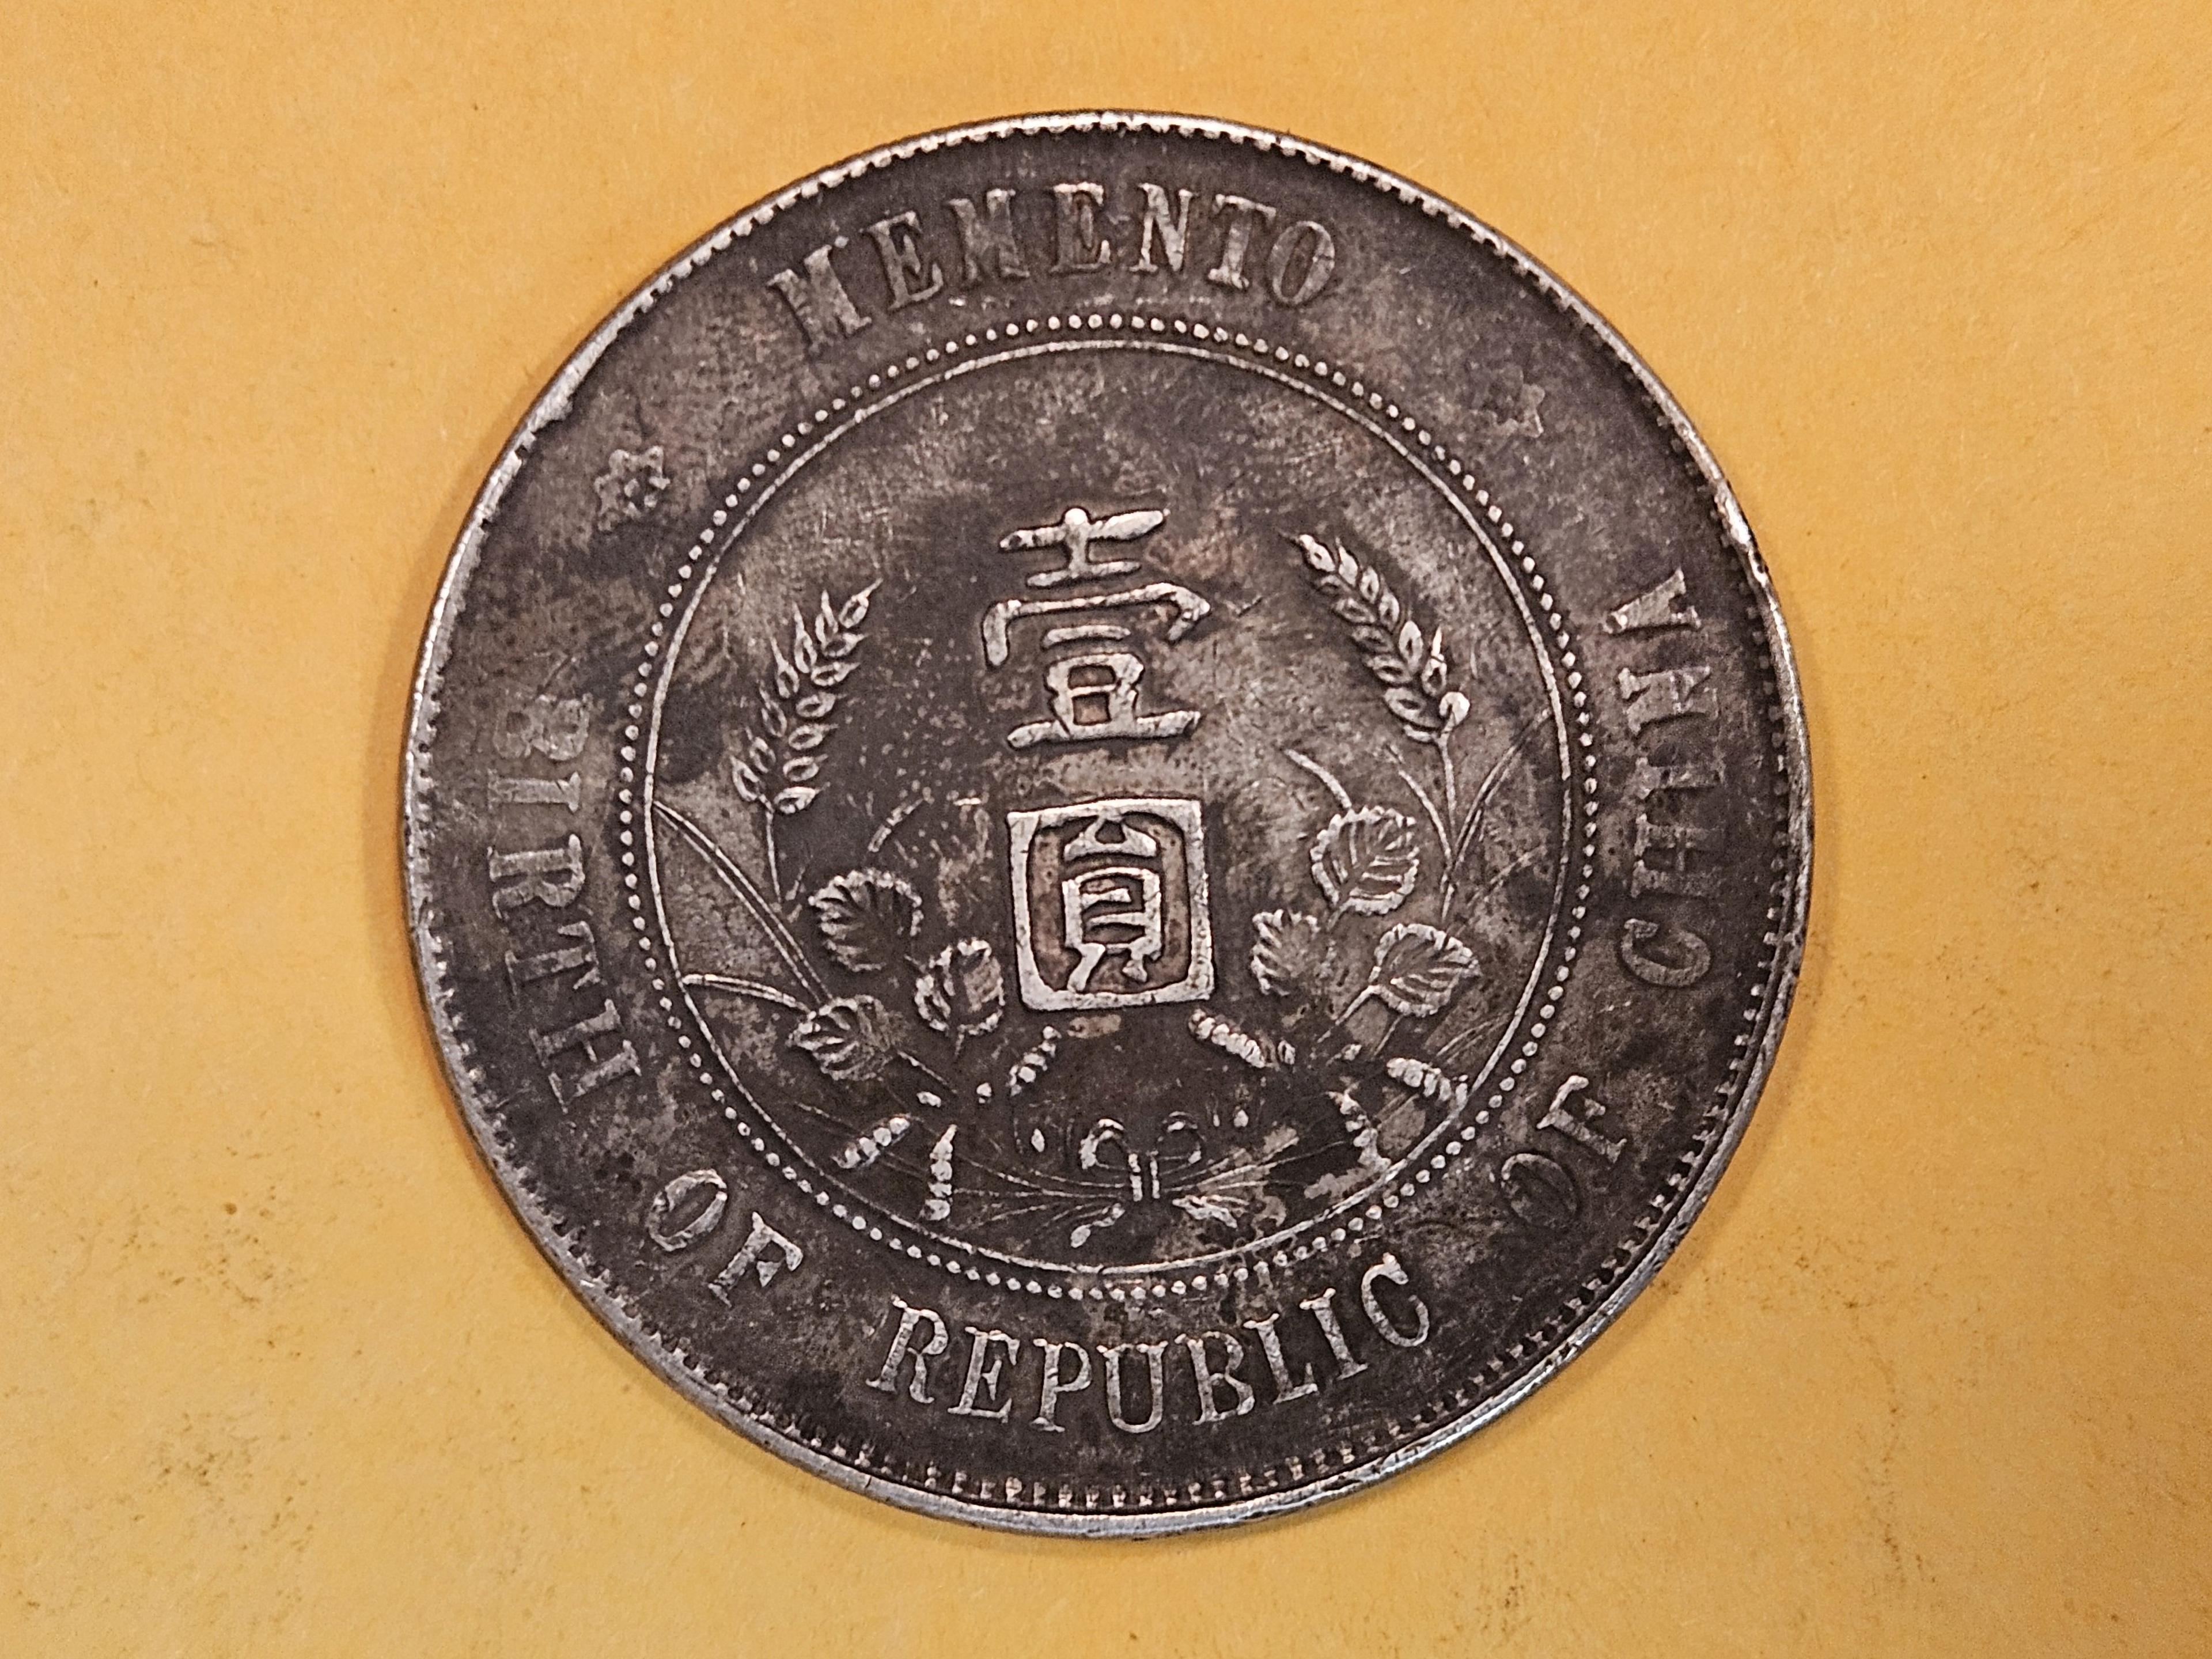 1927 China memento Dollar